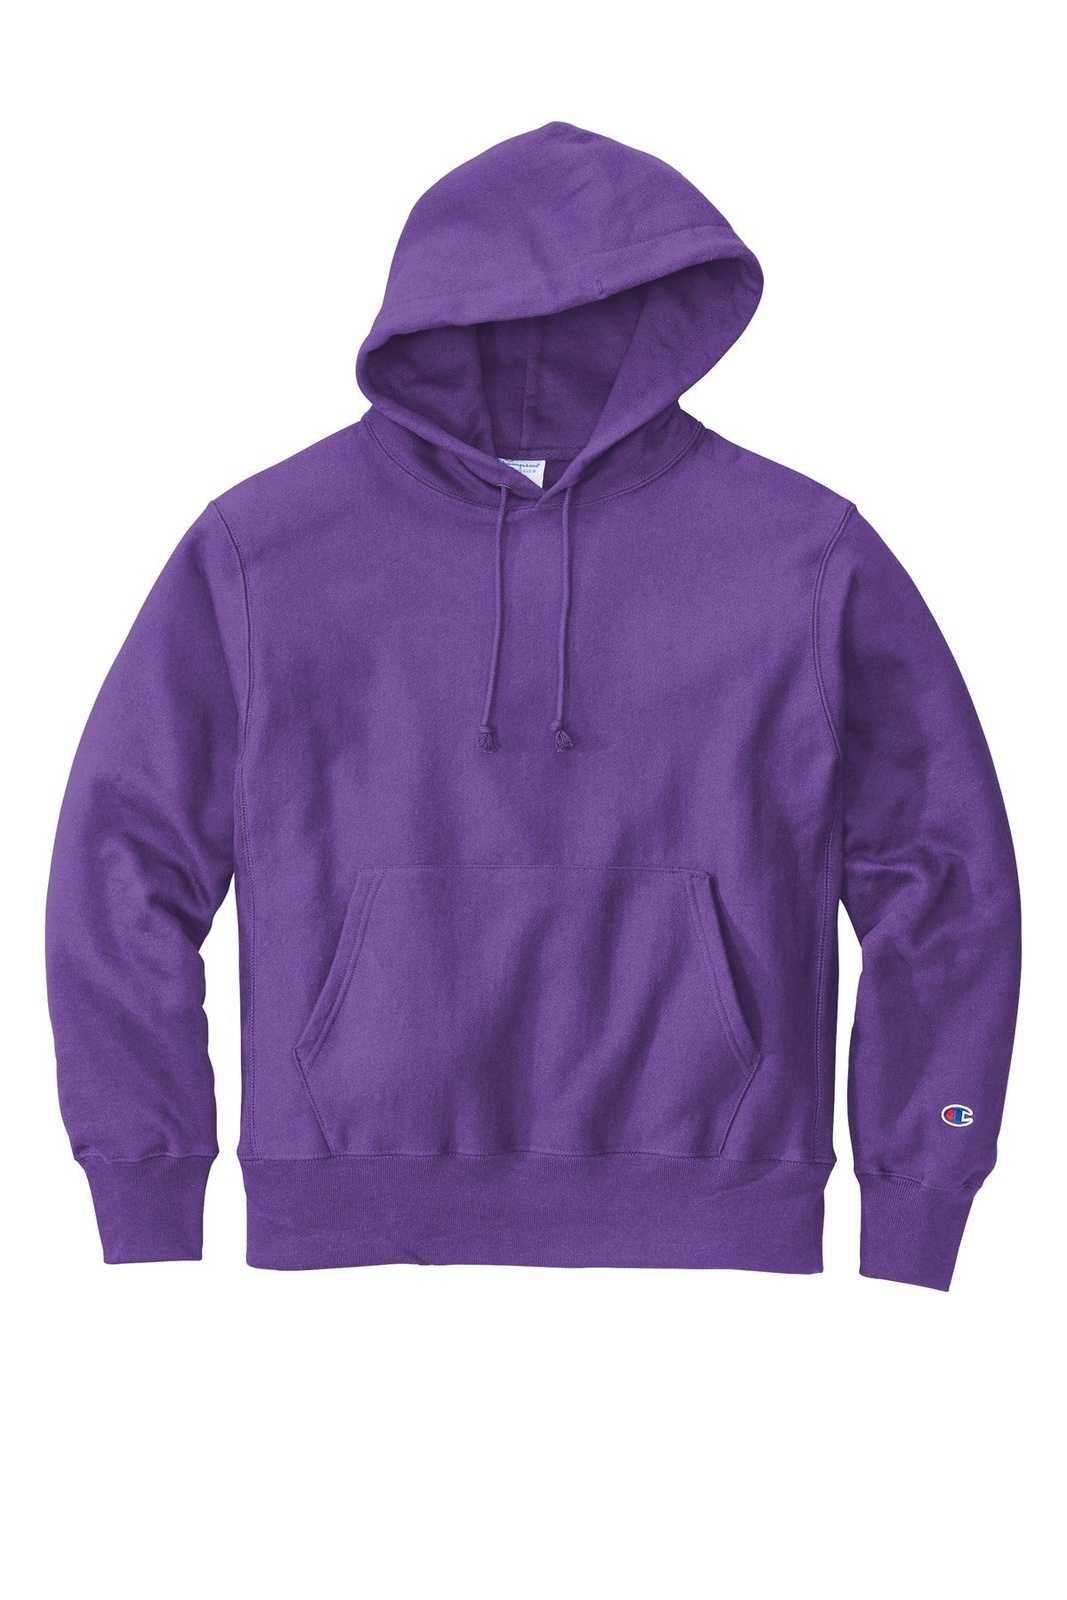 Champion S101 Reverse Weave Hooded Sweatshirt - Purple - HIT a Double